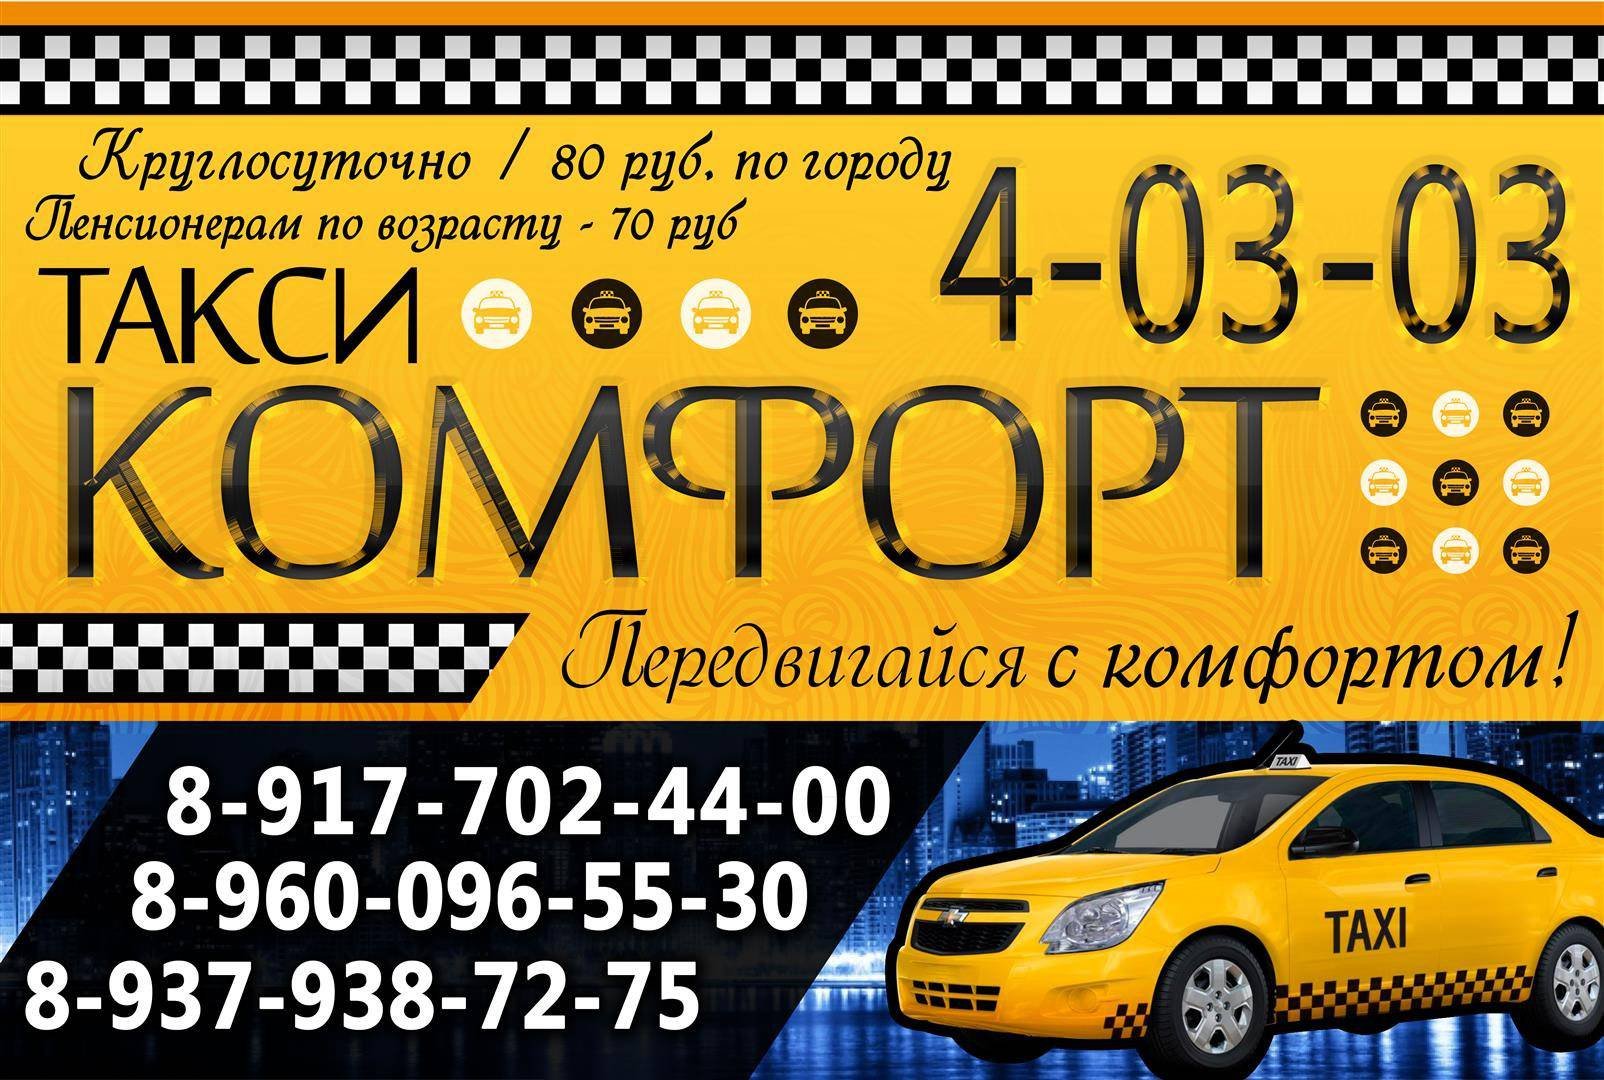 Такси тверь недорого телефон. Комфорт такси такси. Баннер такси. Таксопарк комфорт. Реклама такси комфорт.